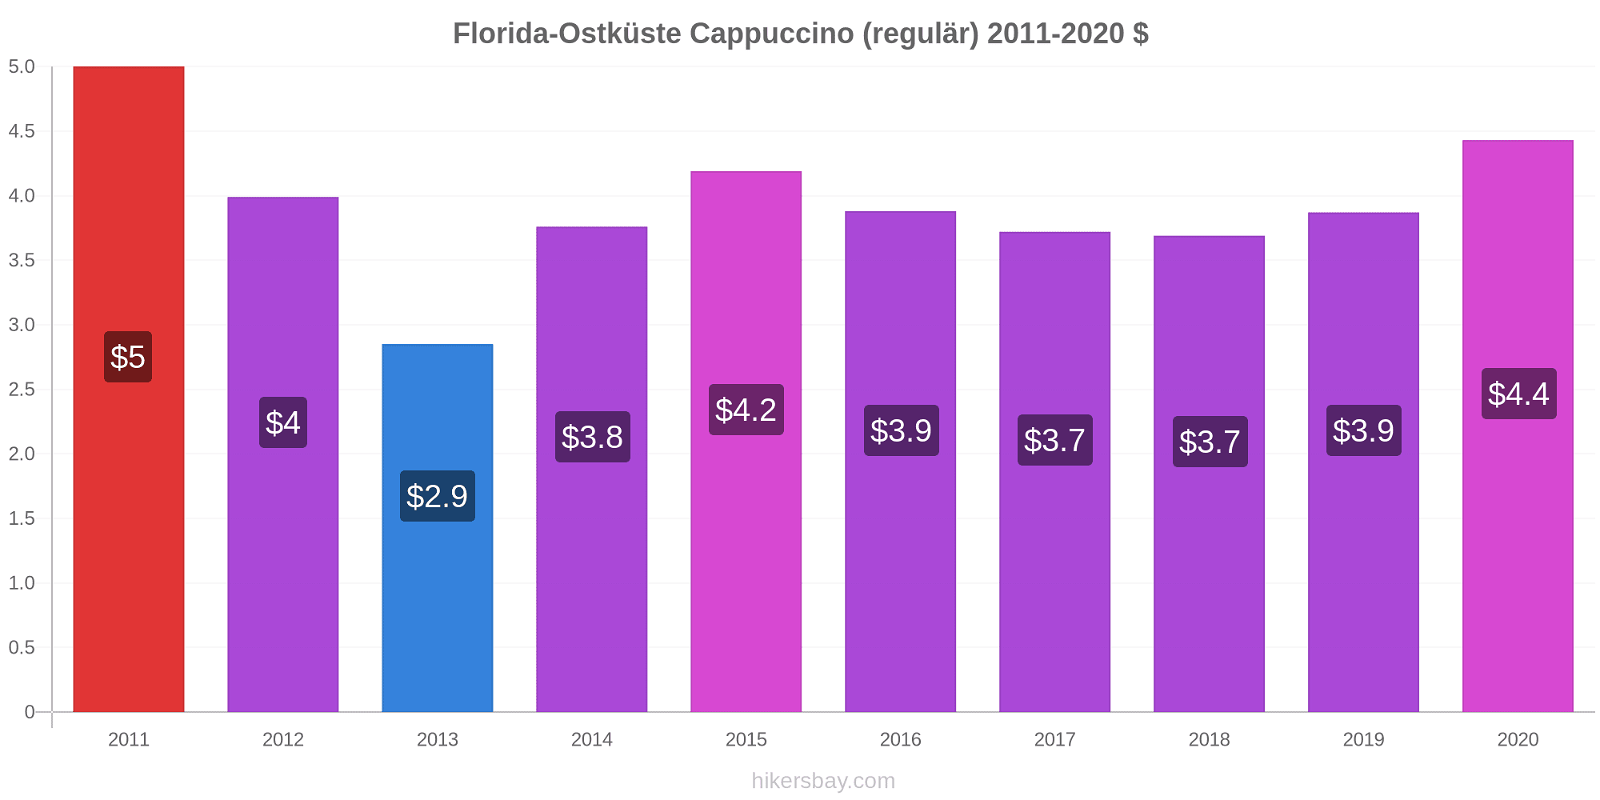 Florida-Ostküste Preisänderungen Cappuccino (regulär) hikersbay.com